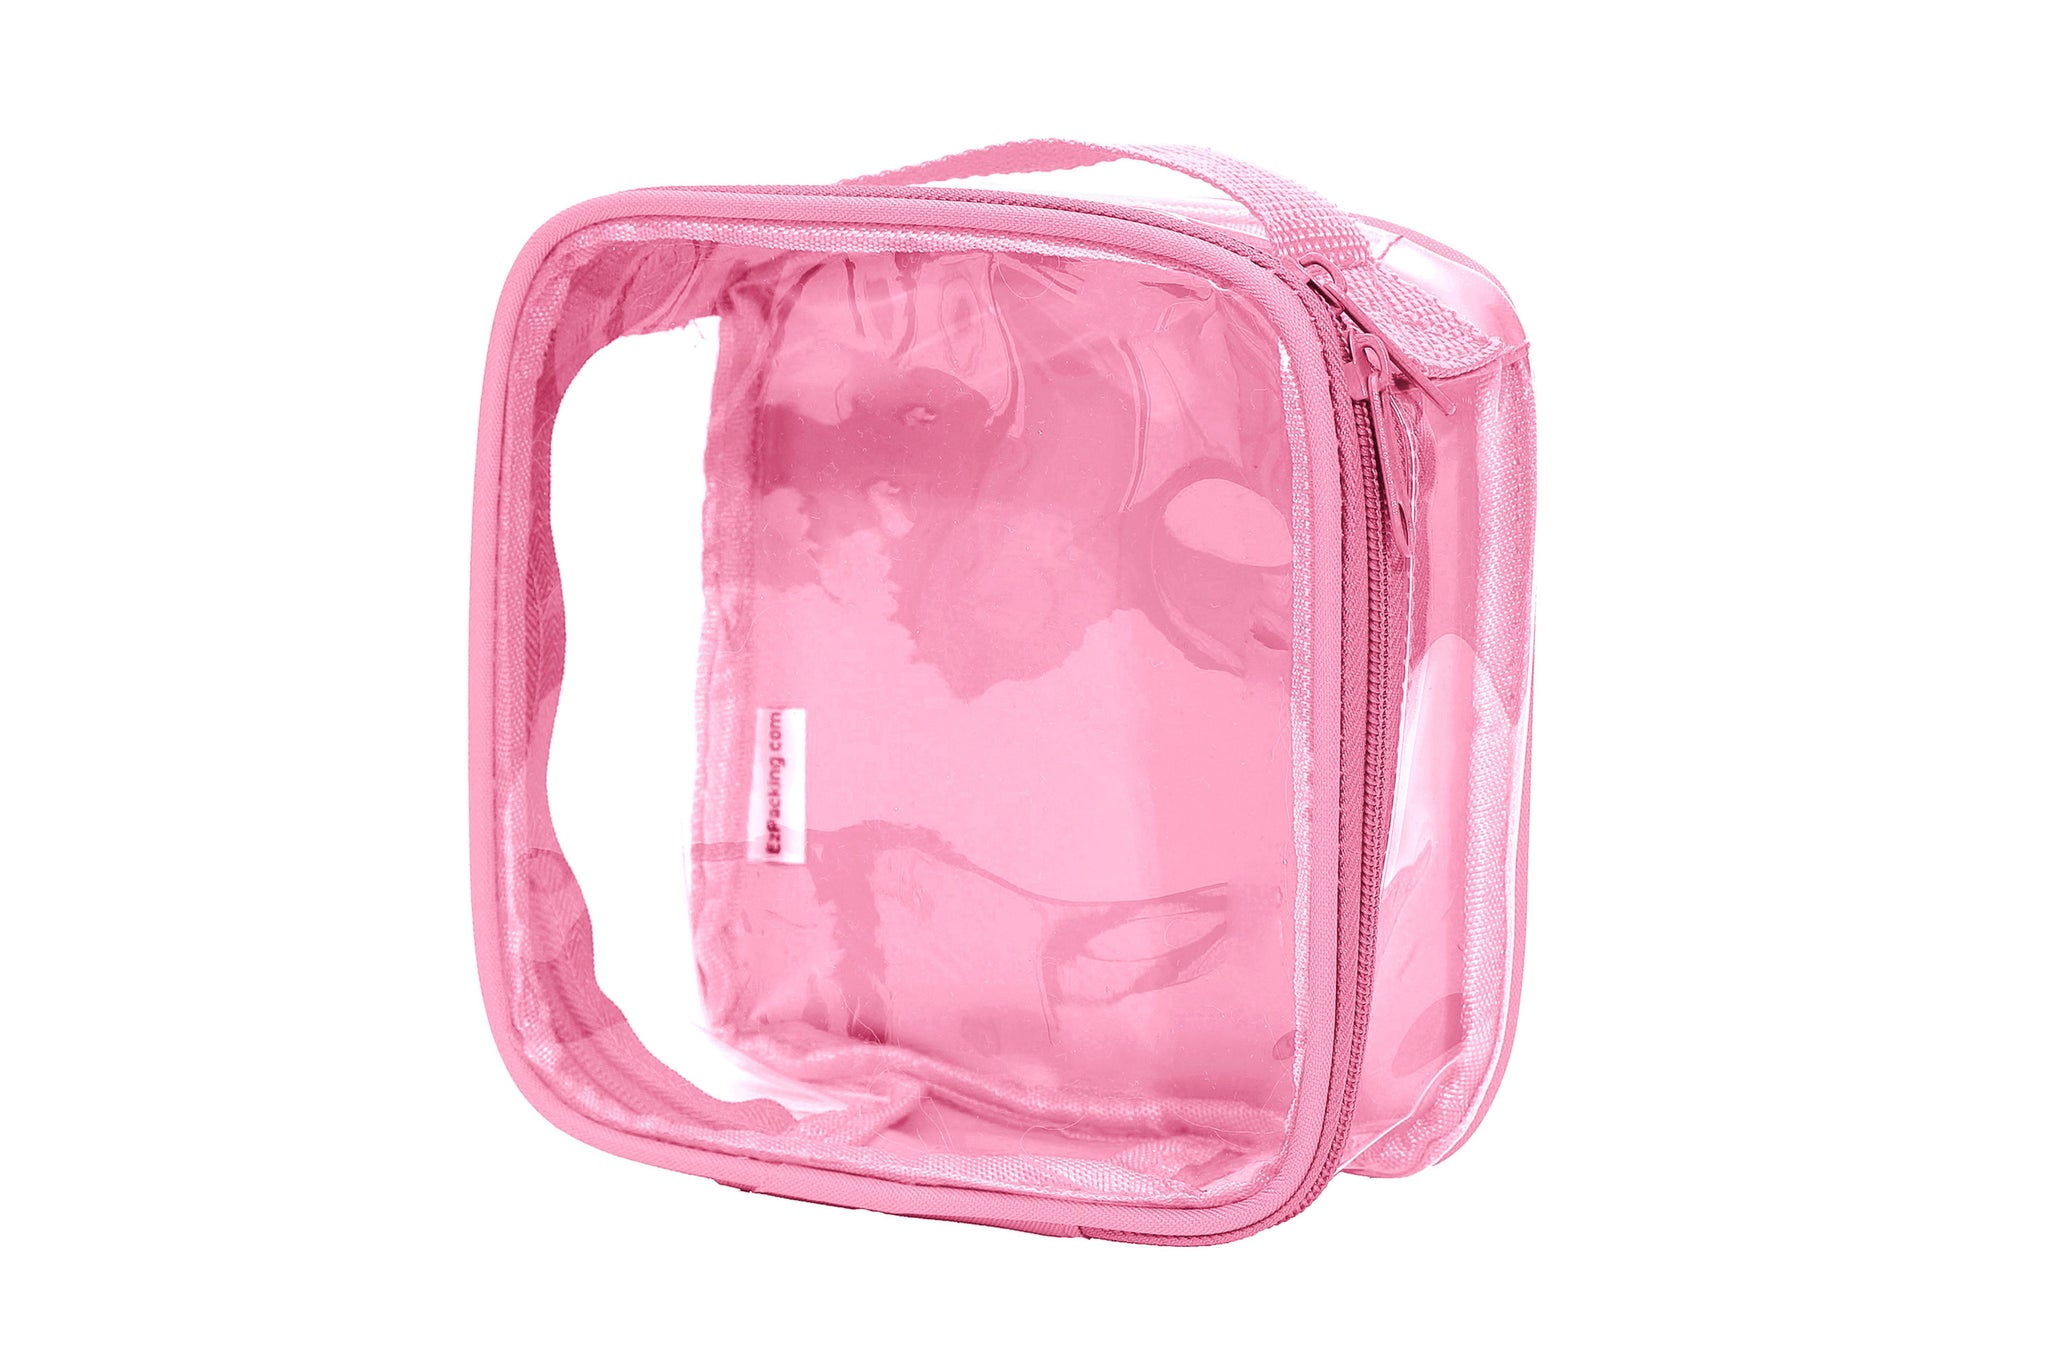 Clear Toiletry Bag Quart Size Bag Travel Makeup Cosmetic Bag - Temu